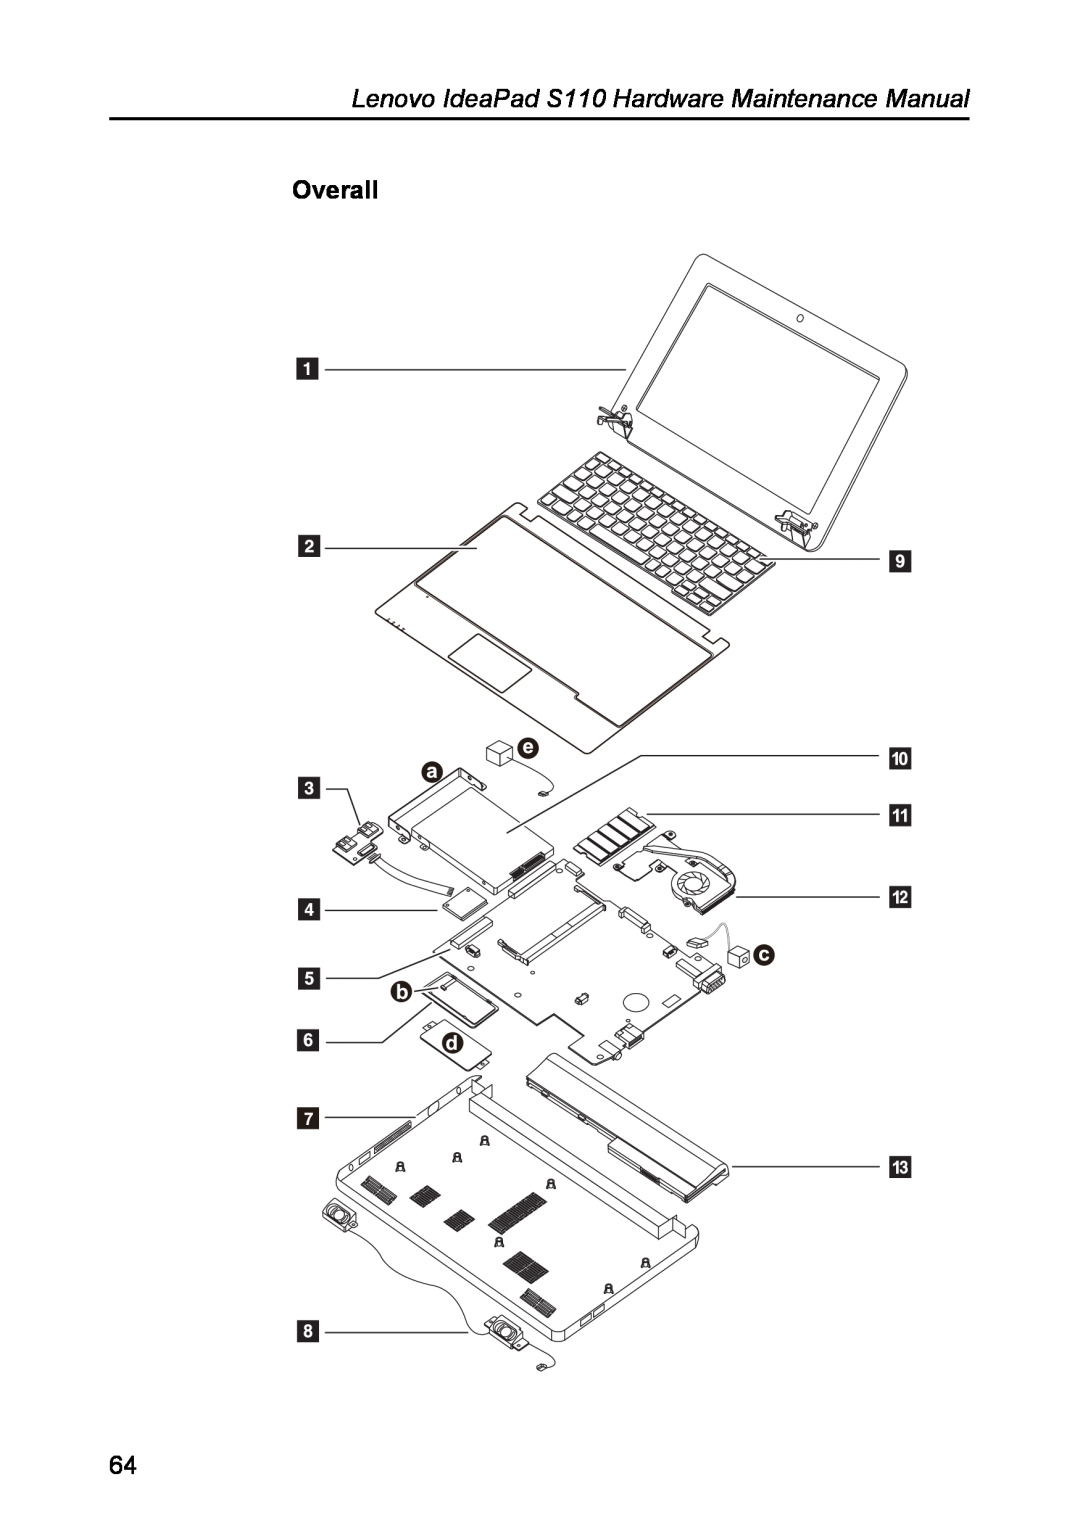 Lenovo manual Overall, Lenovo IdeaPad S110 Hardware Maintenance Manual 